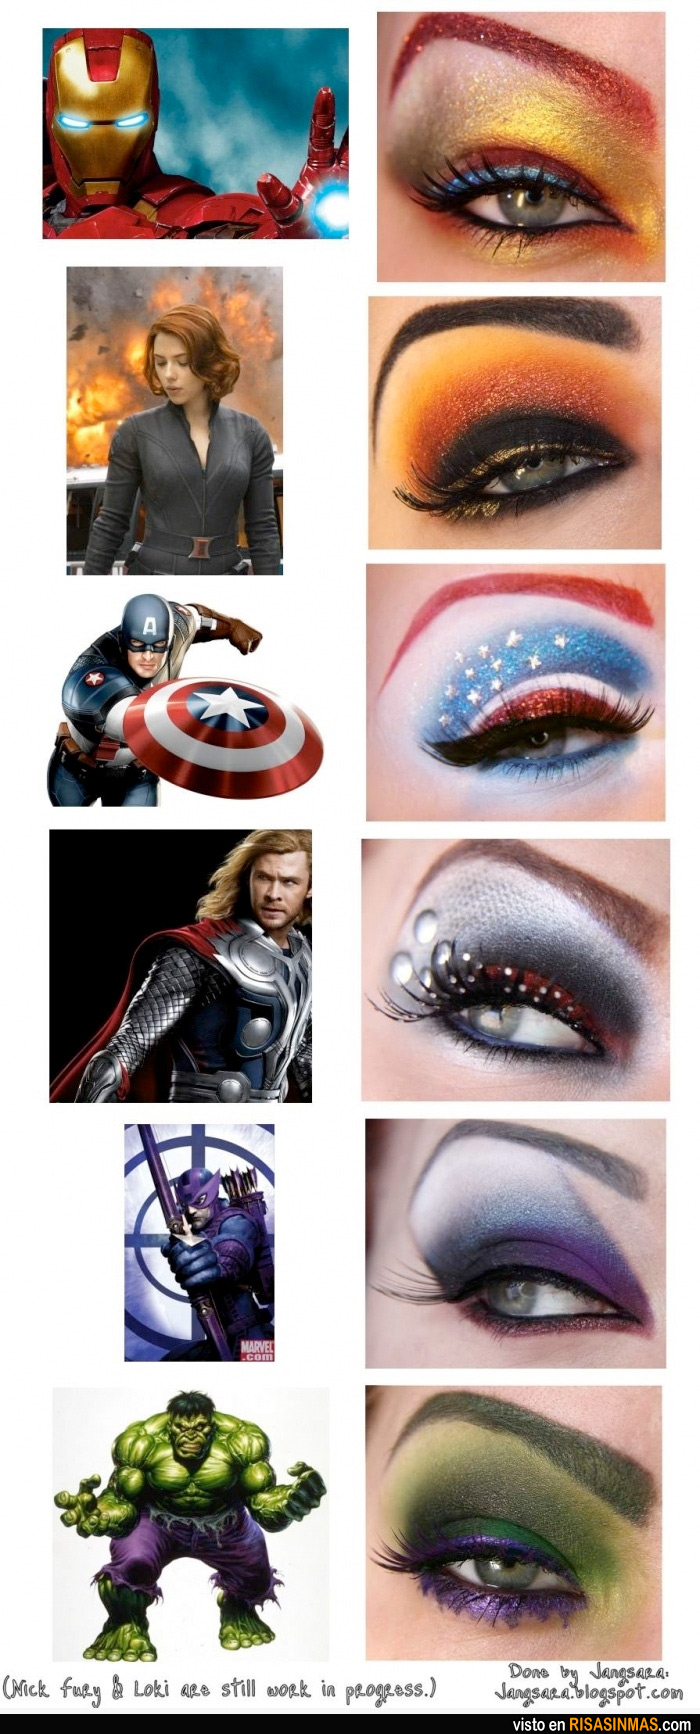 Maquillaje inspirado en los Vengadores